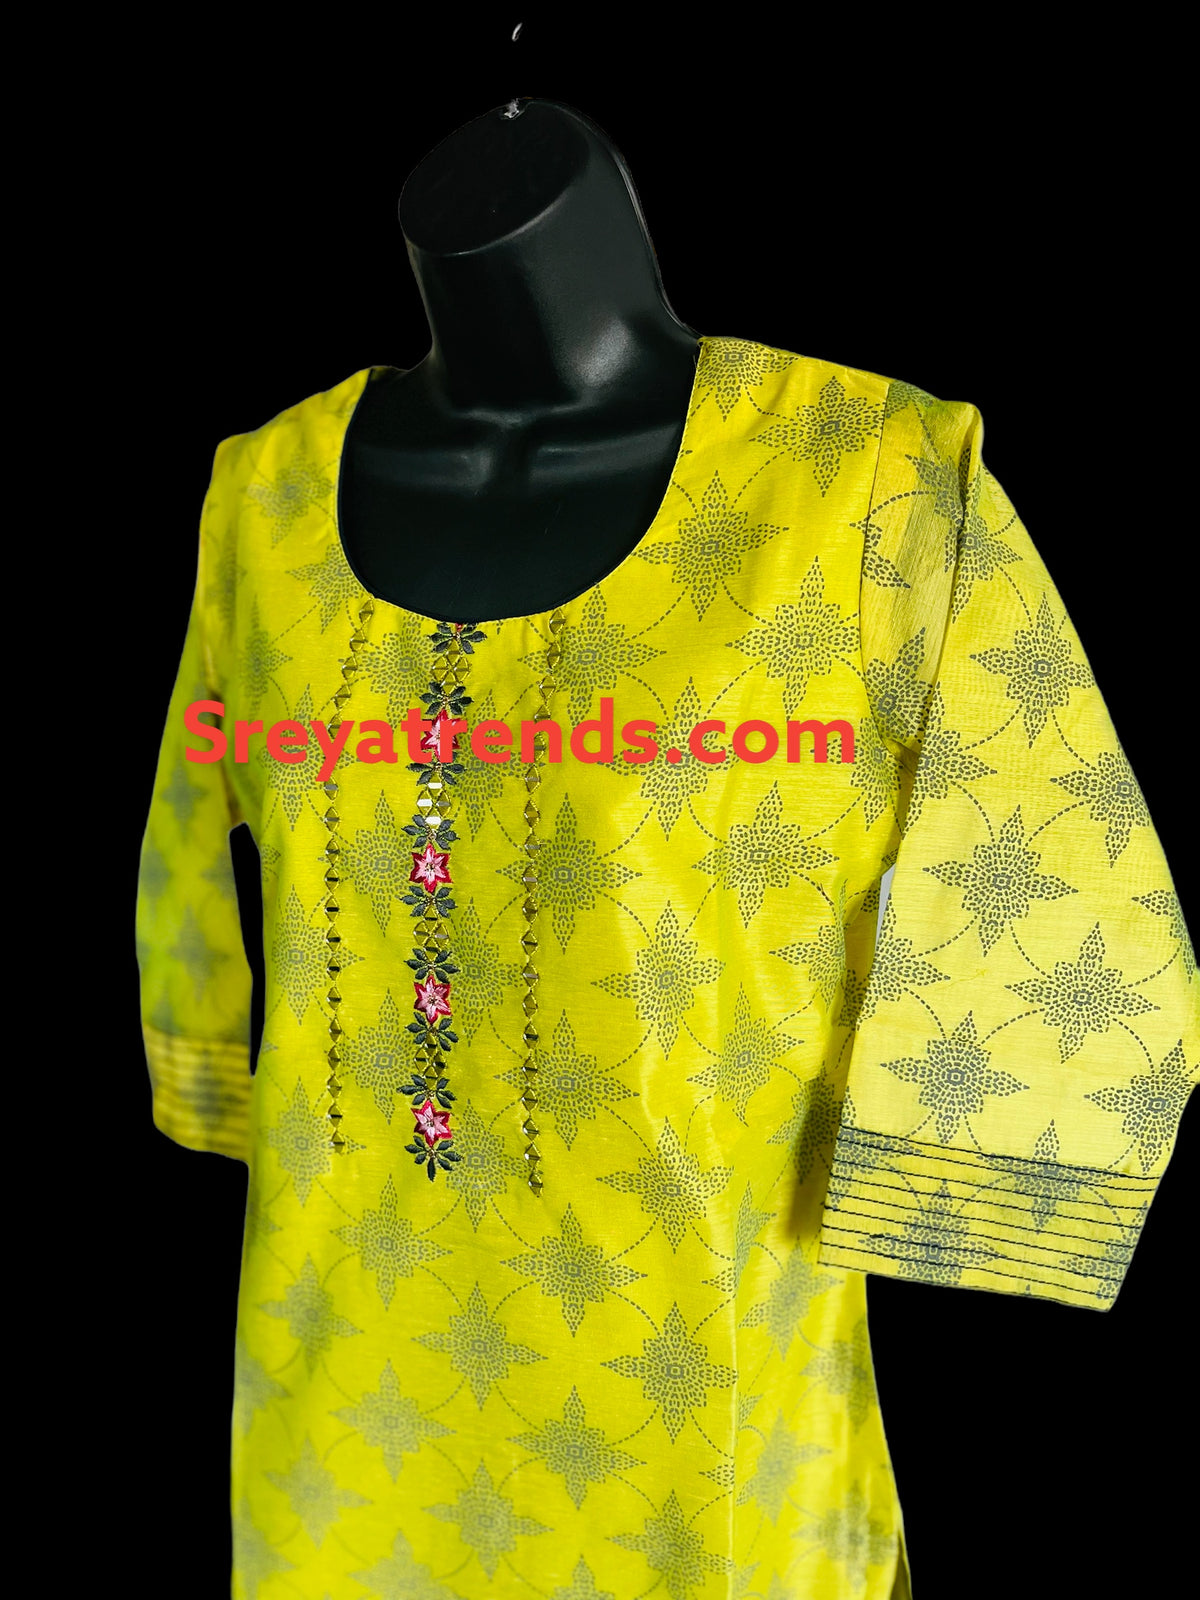 STK264-Pure Designer Chanderi Cotton Kurti with York Thread work